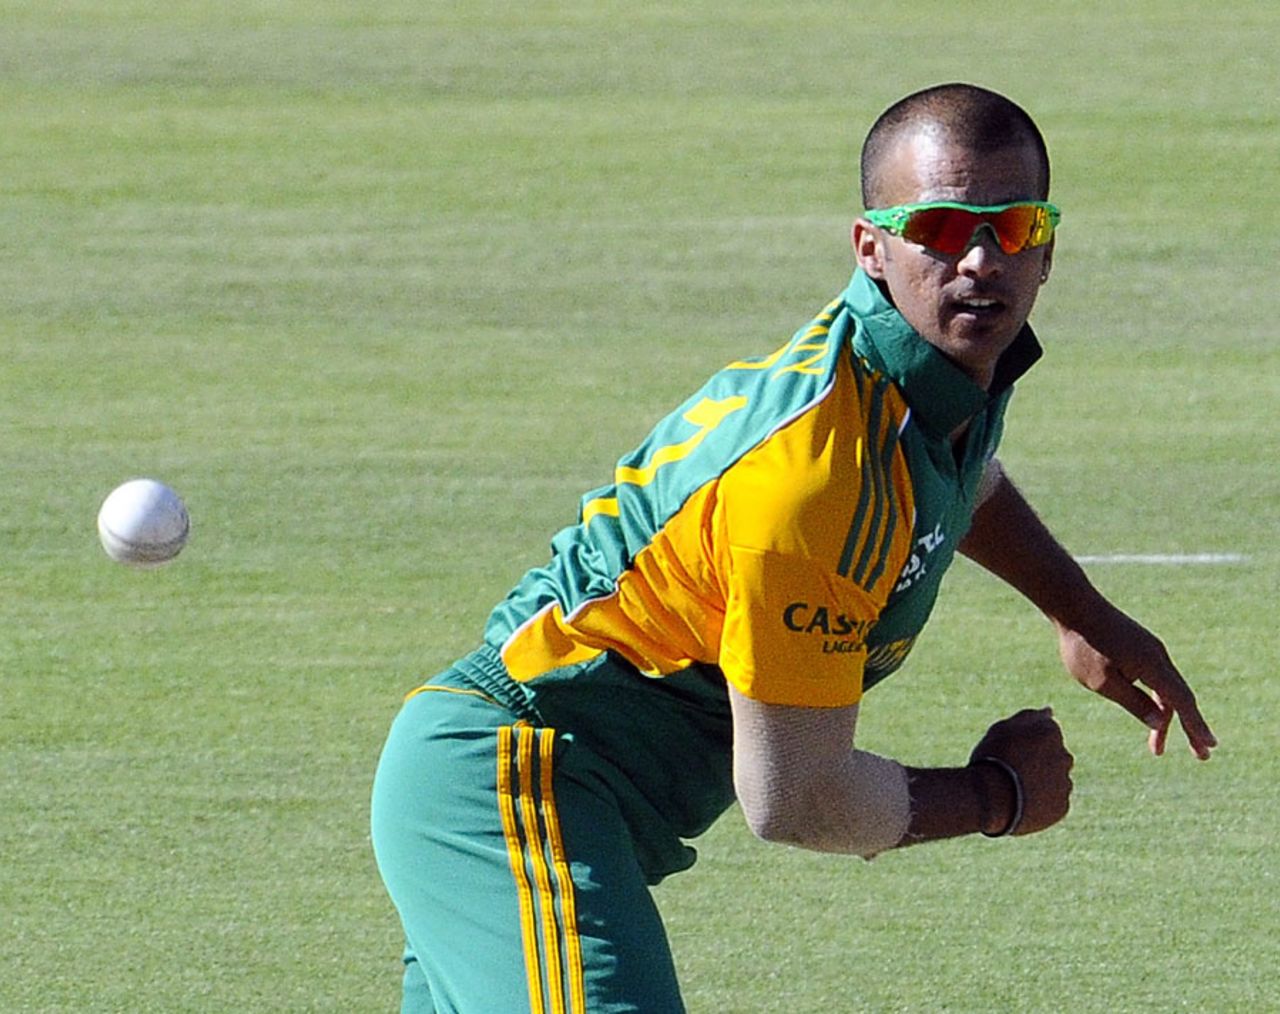 JP Duminy dismissed Tillakaratne Dilshan for 33, South Africa v Sri Lanka, 3rd ODI, Bloemfontein, January 17, 2012